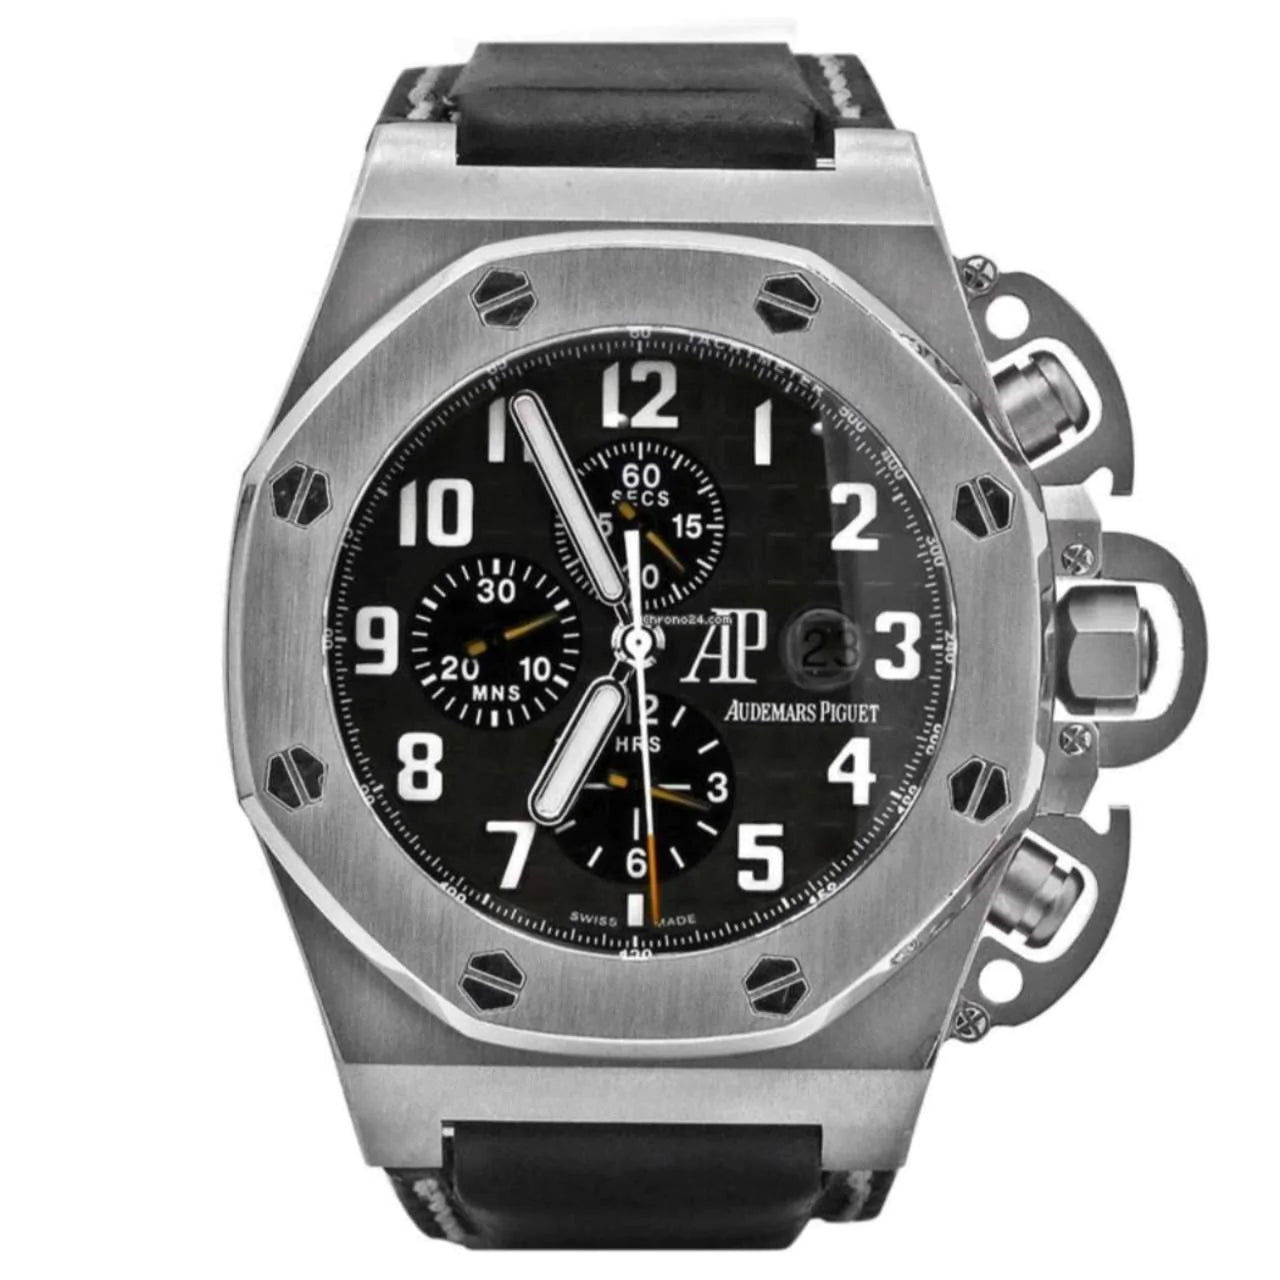 Audemars Piguet Royal Oak Offshore T3 Chronograph Watch